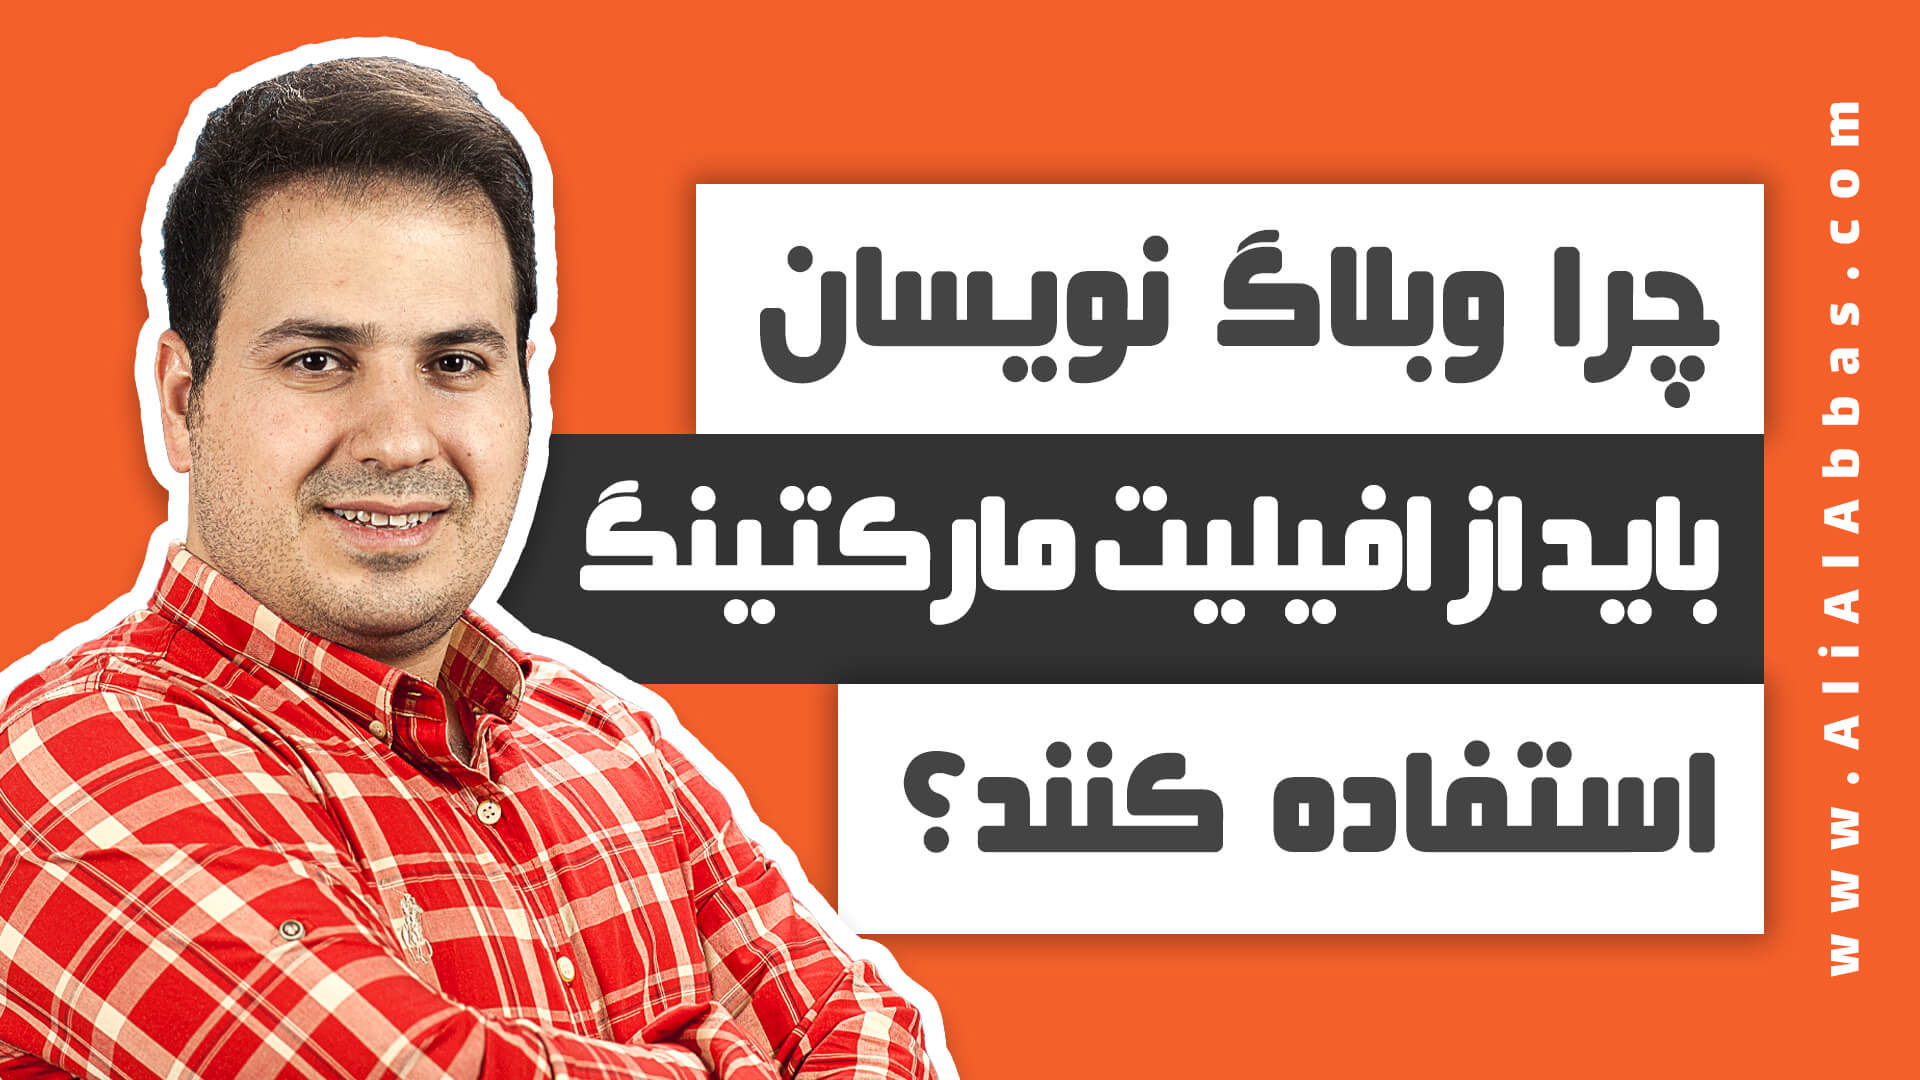 علی آل عباس - چرا وبلاگ نویسان باید از افیلیت مارکتینگ استفاده کنند